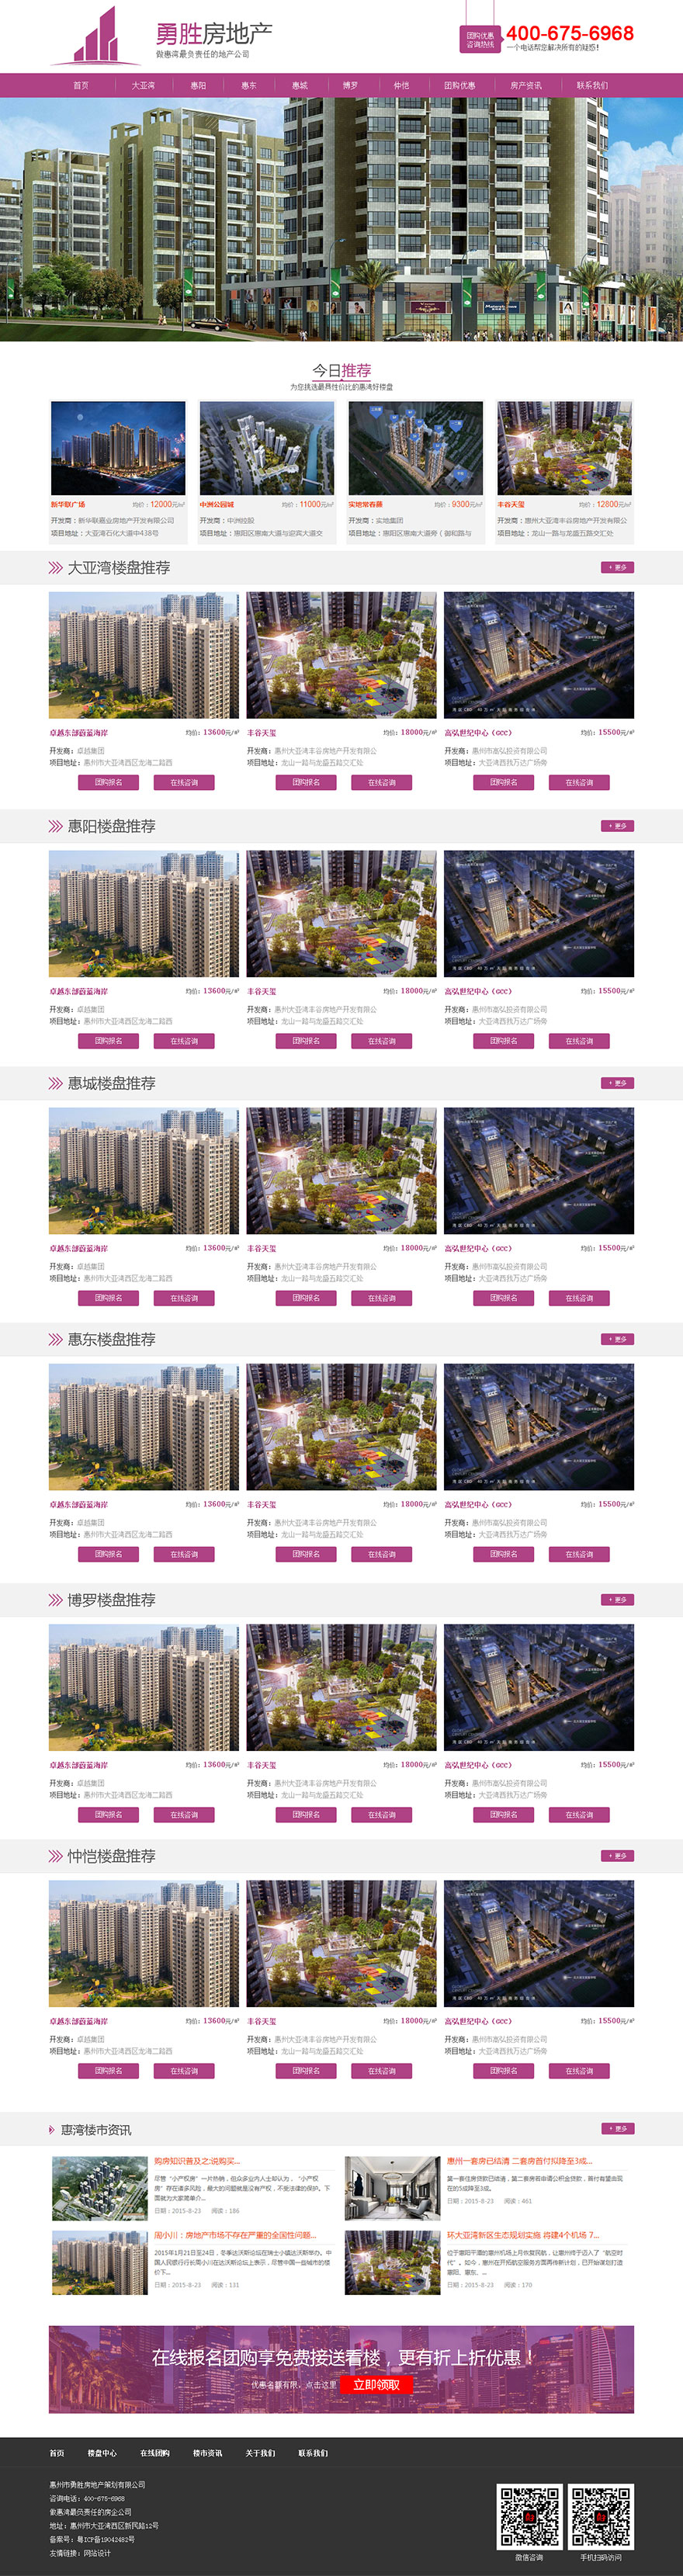 惠州勇胜房地产经纪公司网站设计